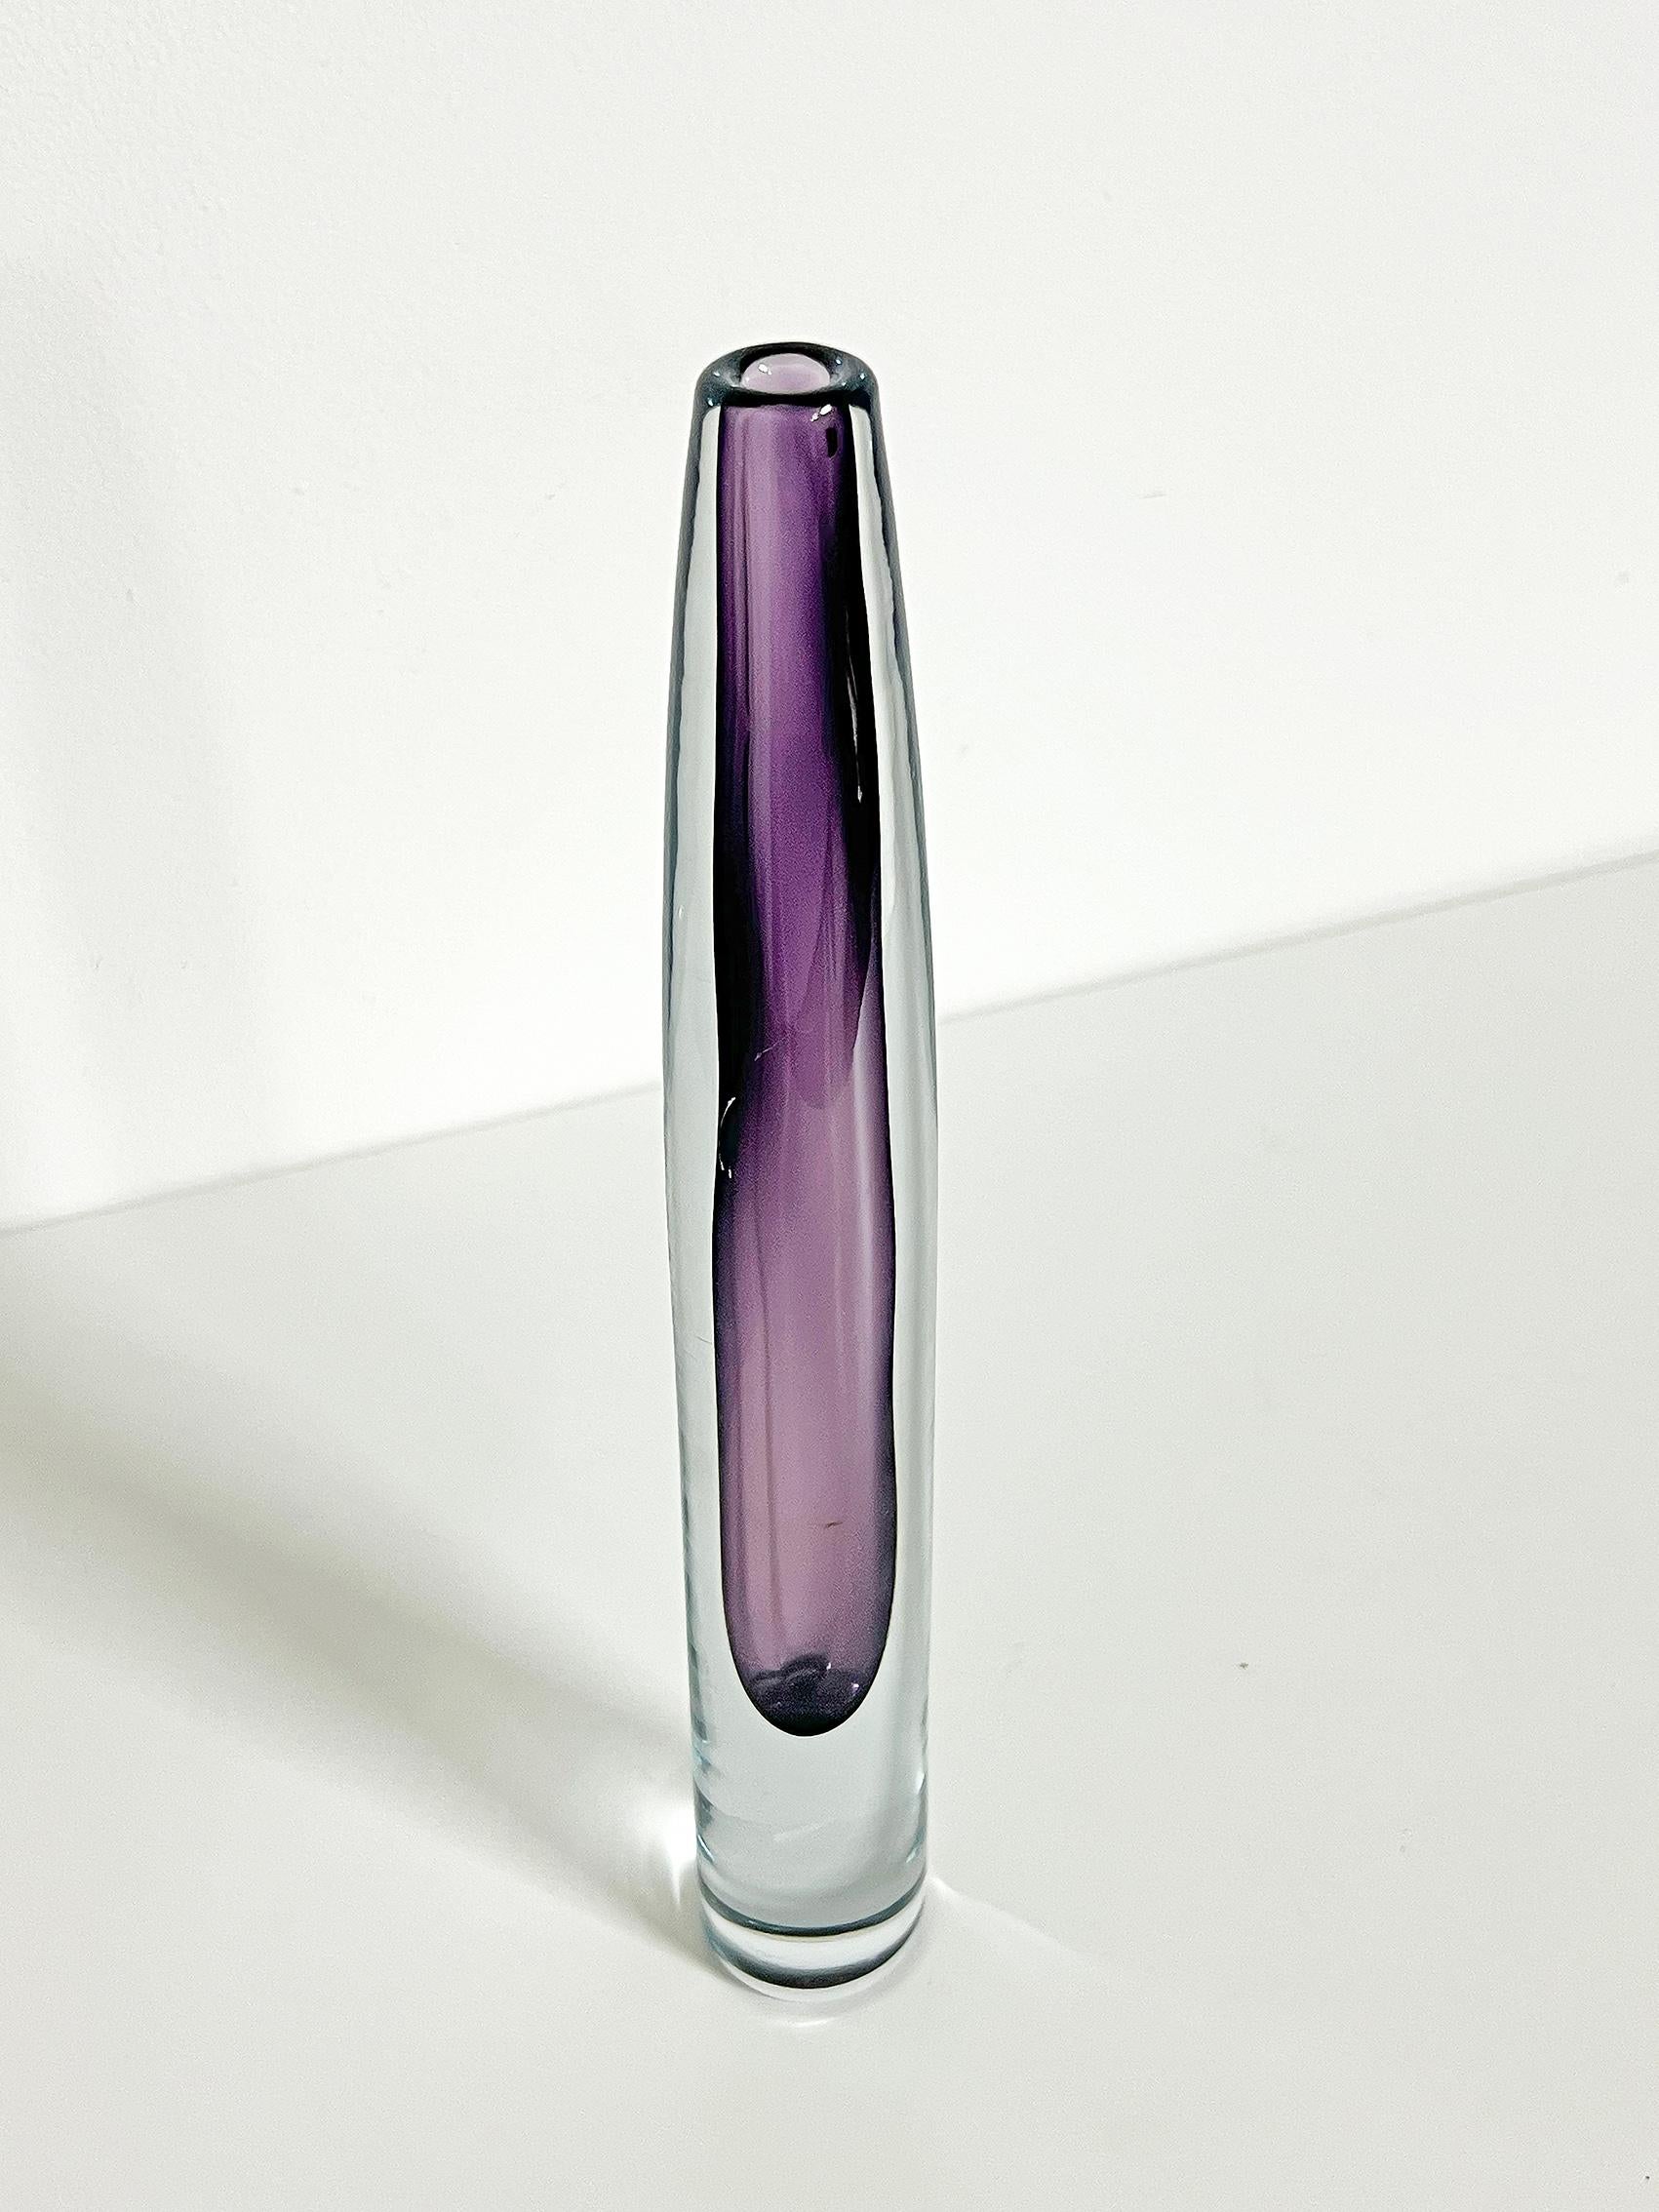 Mid-Century Modern Scandinavian Modern Vase in Purple by Gunnar Nylund for Strömbergshyttan -1950's For Sale